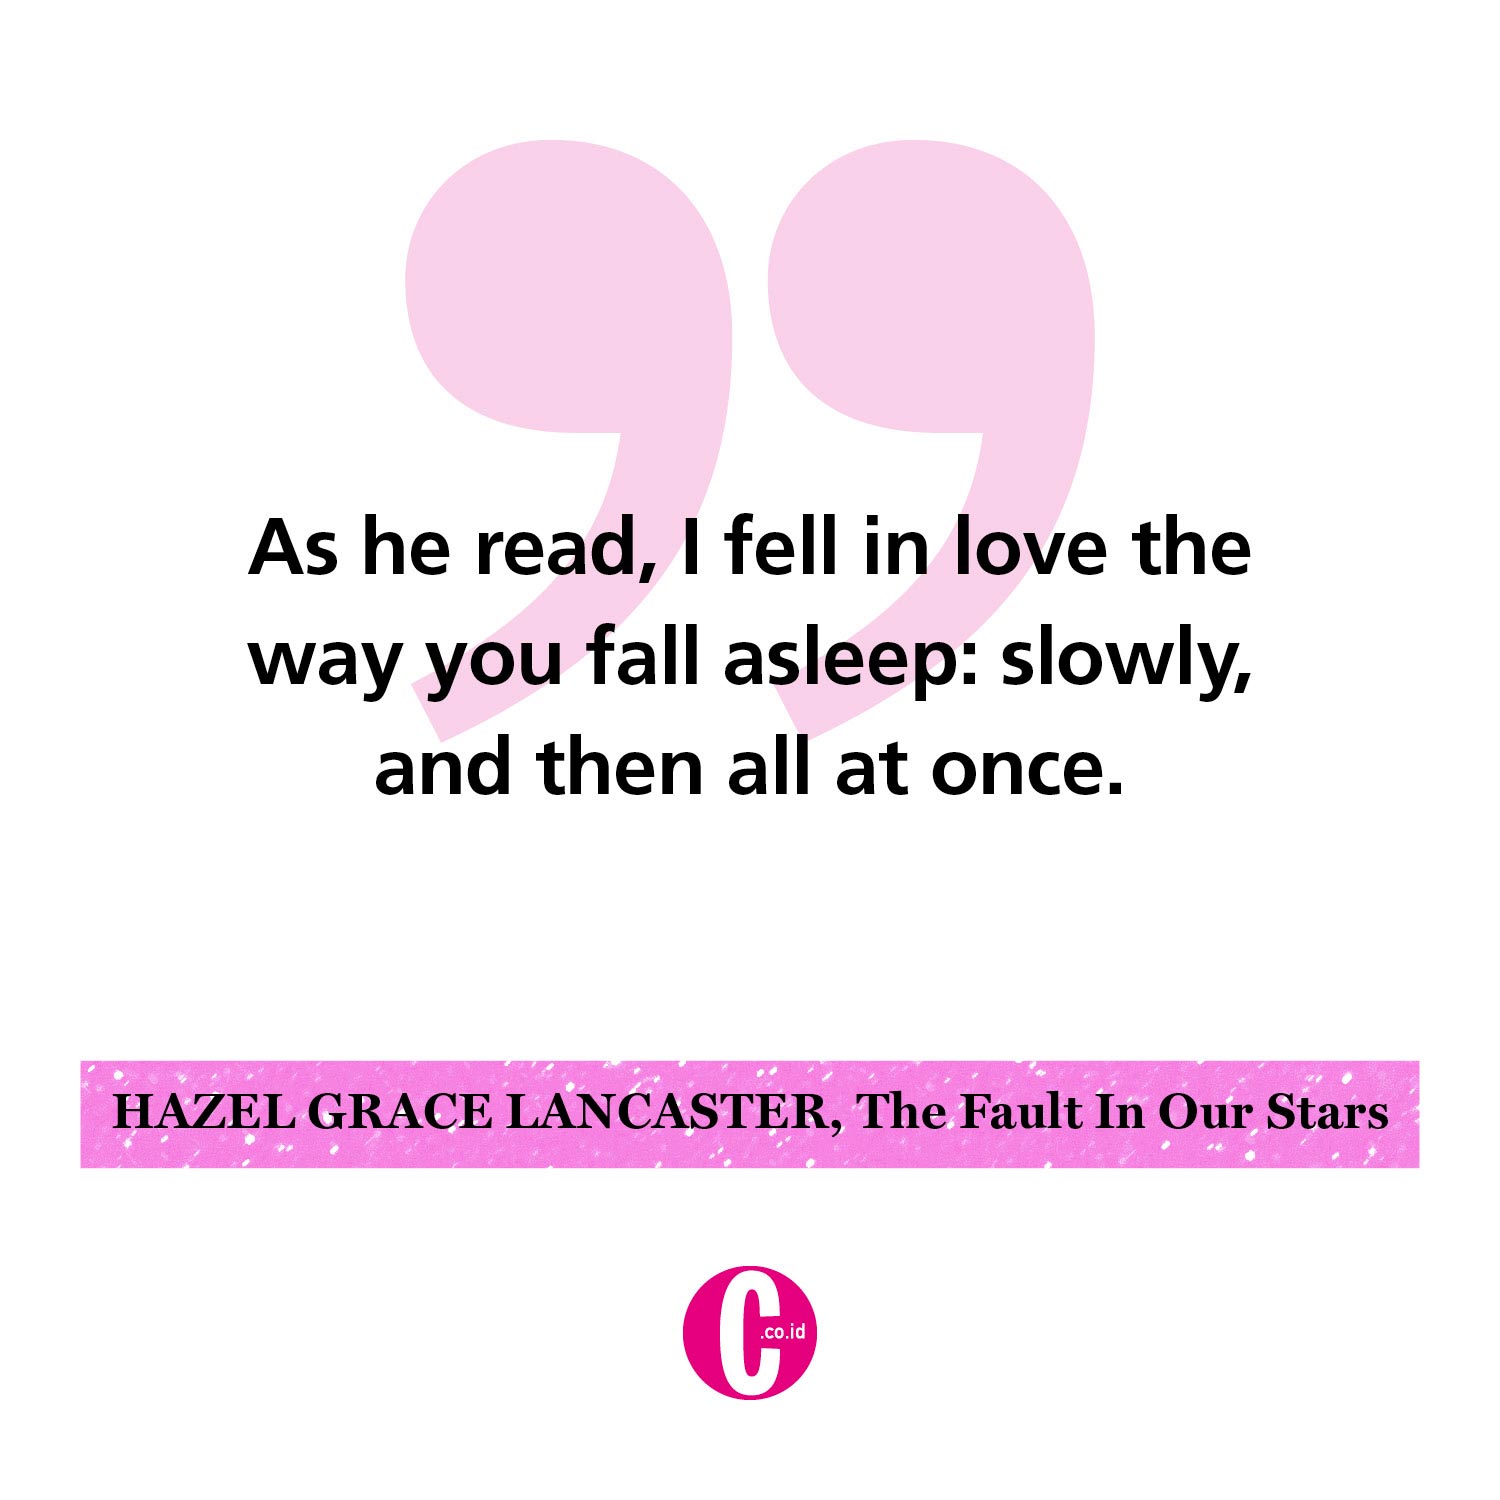 Kata-kata romantis dari Hazel Grace Lancaster, The Fault in Our Stars